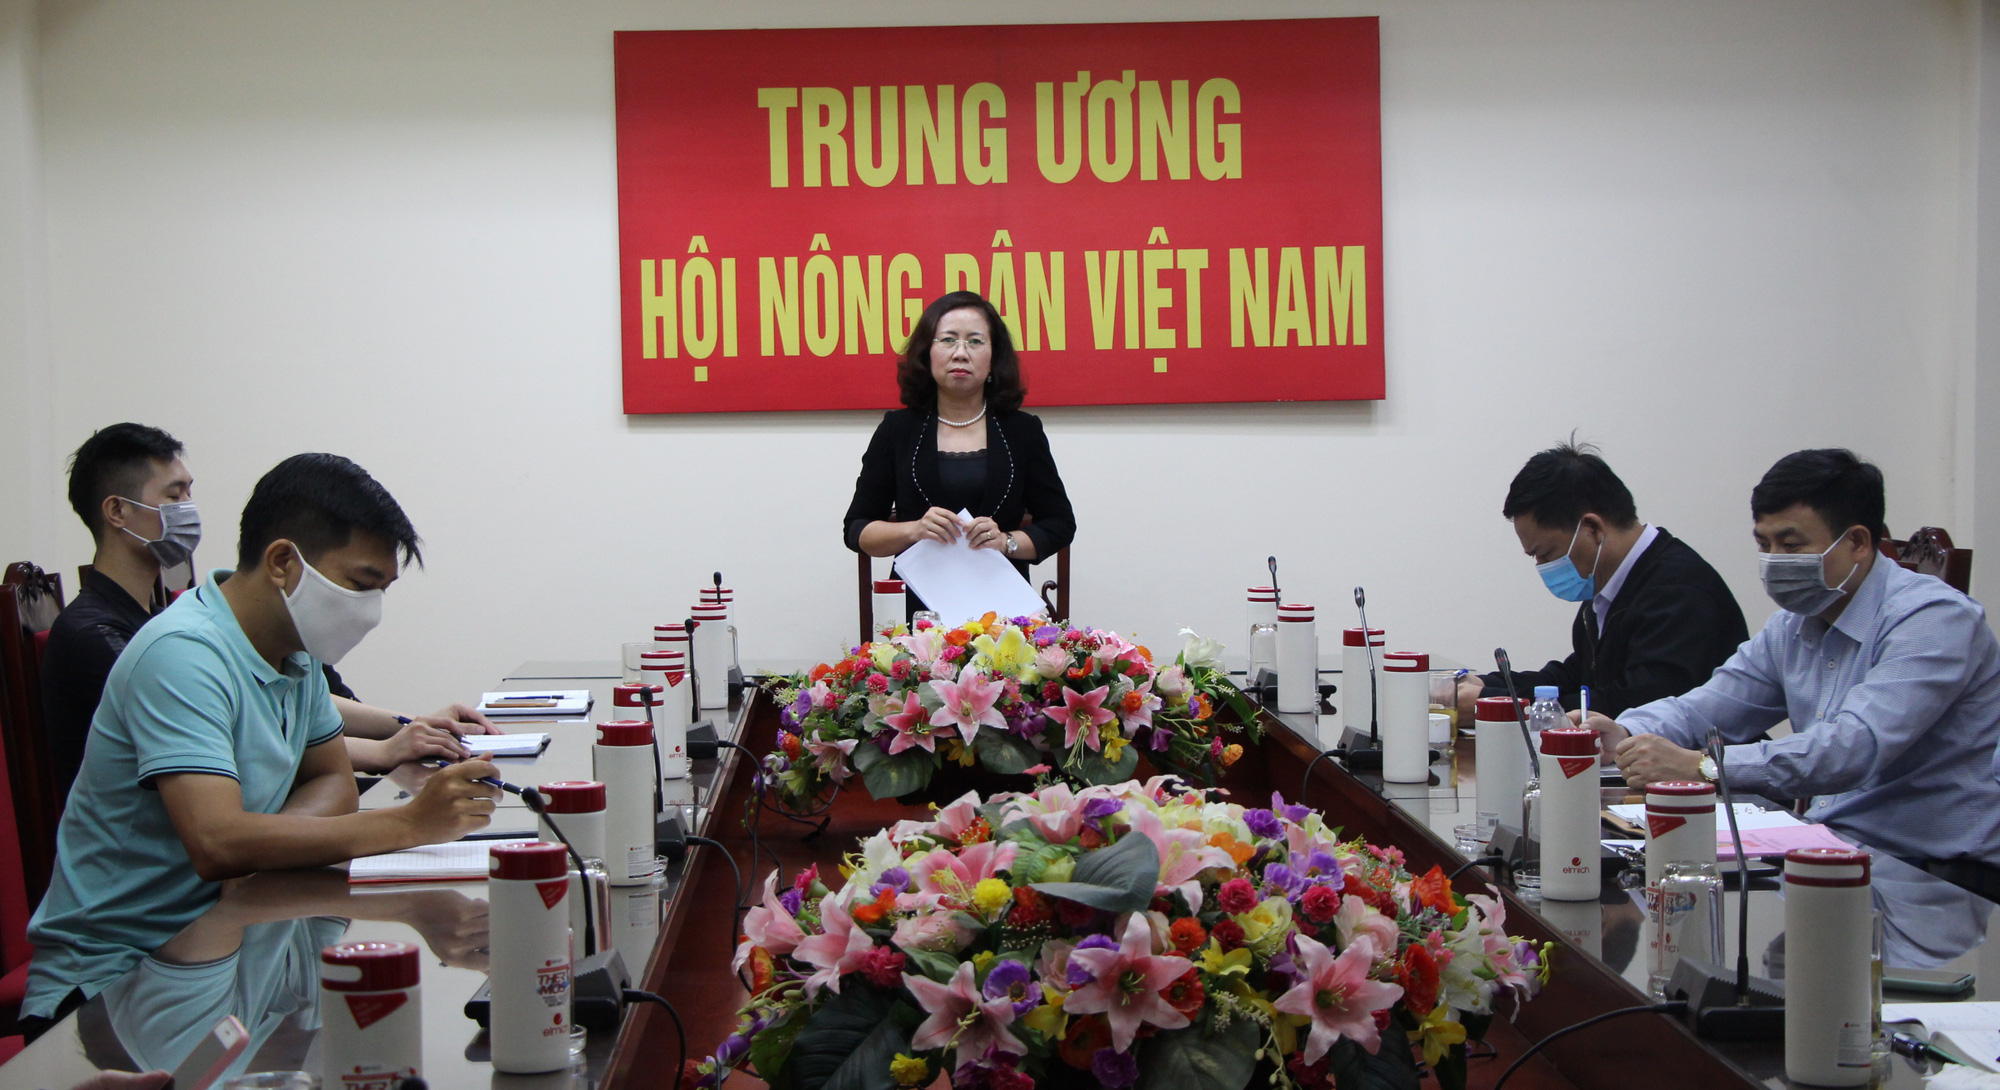 Phó Chủ tịch Trung ương Hội NDVN Bùi Thị Thơm: Xây dựng một thế hệ nông dân mới năng động- Ảnh 1.